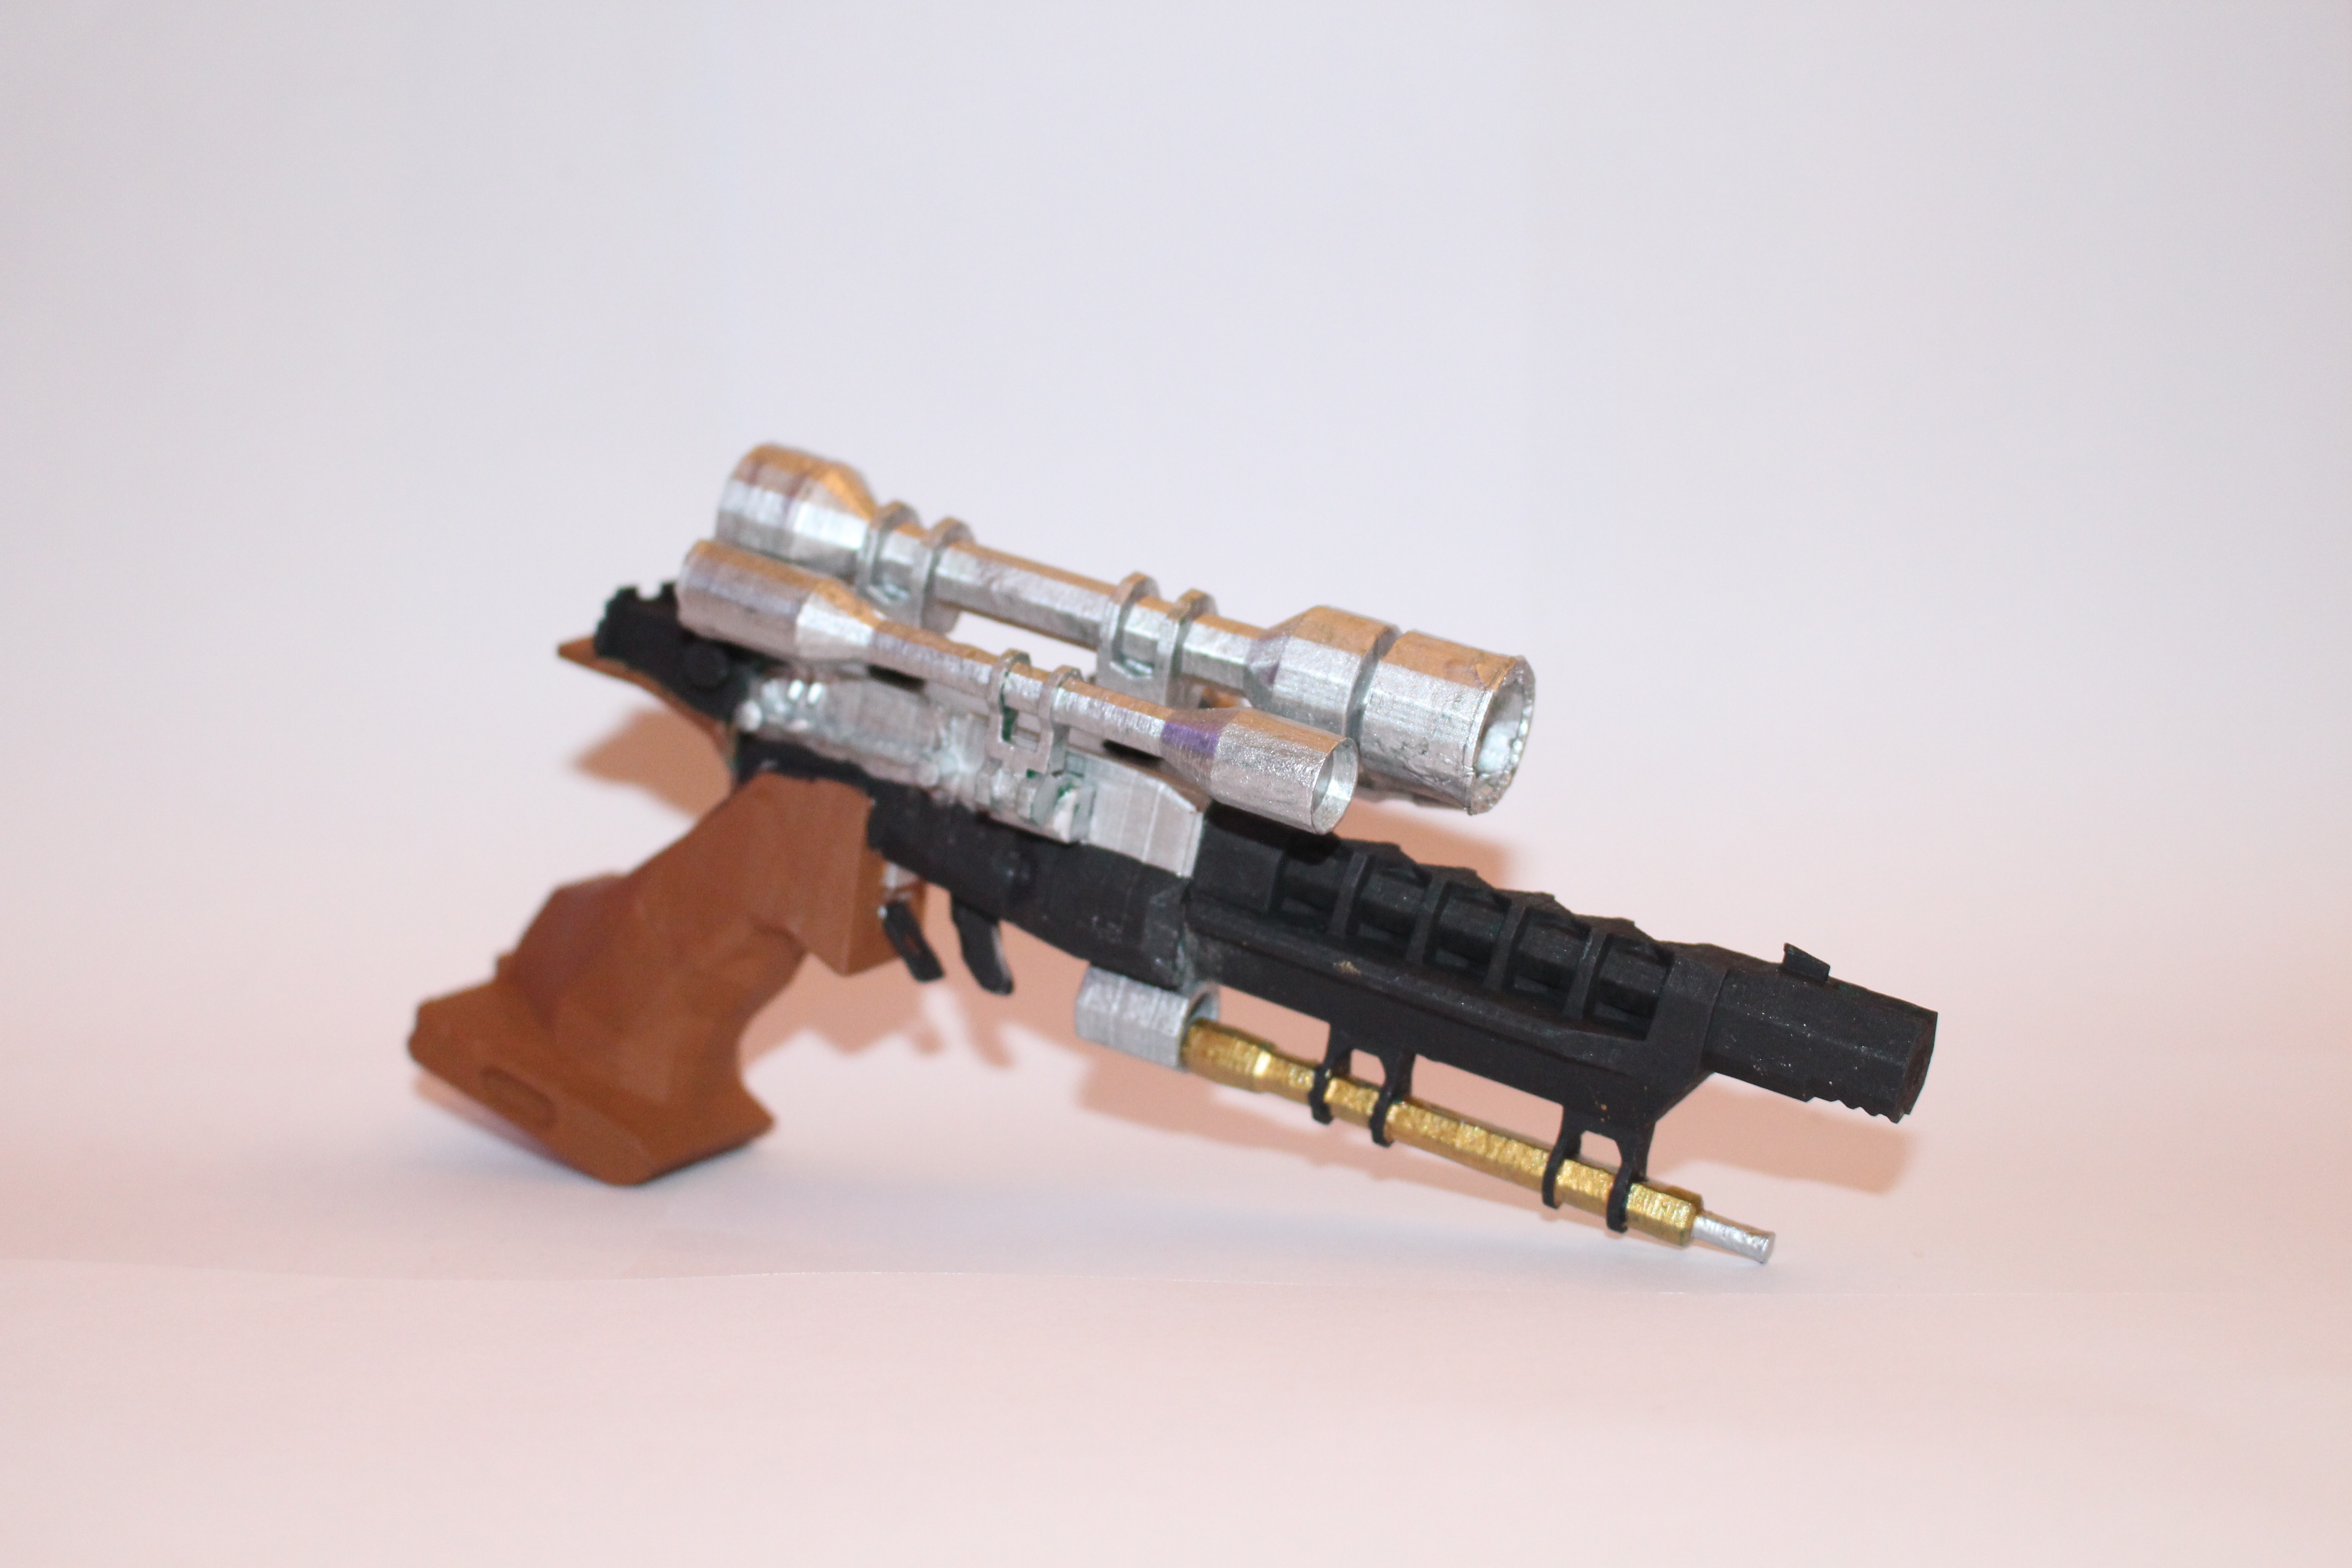 S-5 blaster pistol from Starwars and Starwars battlefront 2